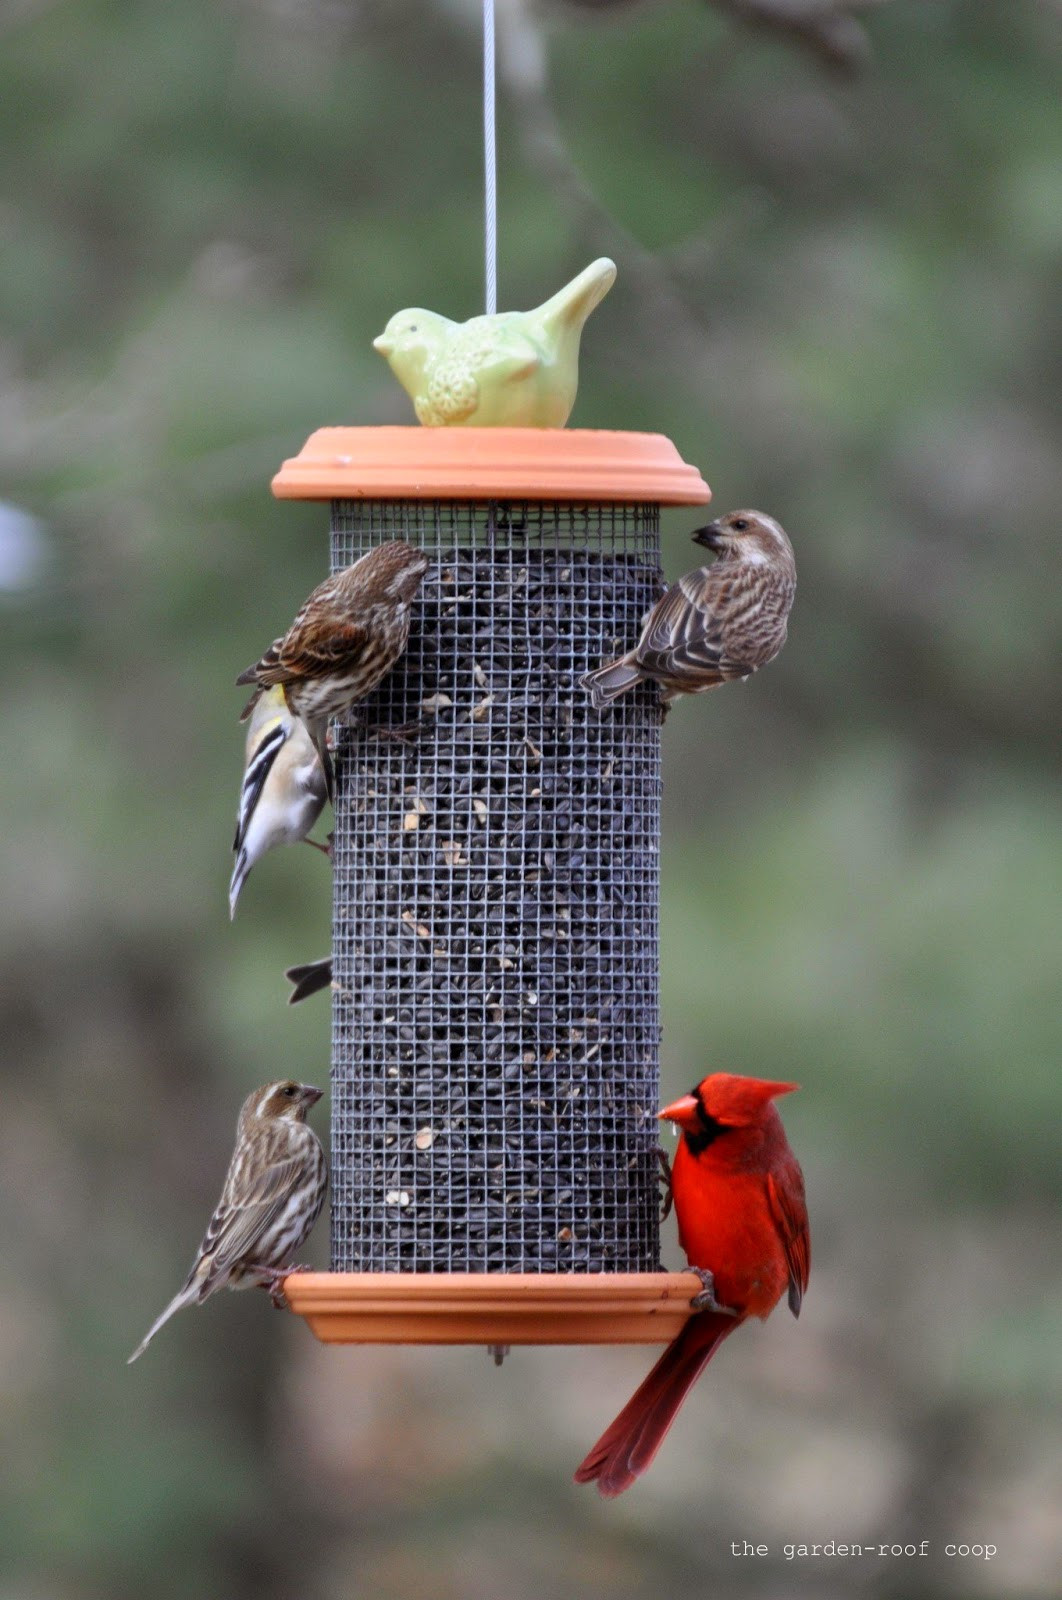 Best ideas about Bird Feeder DIY
. Save or Pin Rebecca s Bird Gardens Blog DIY Sunflower Tower Bird Feeder Now.